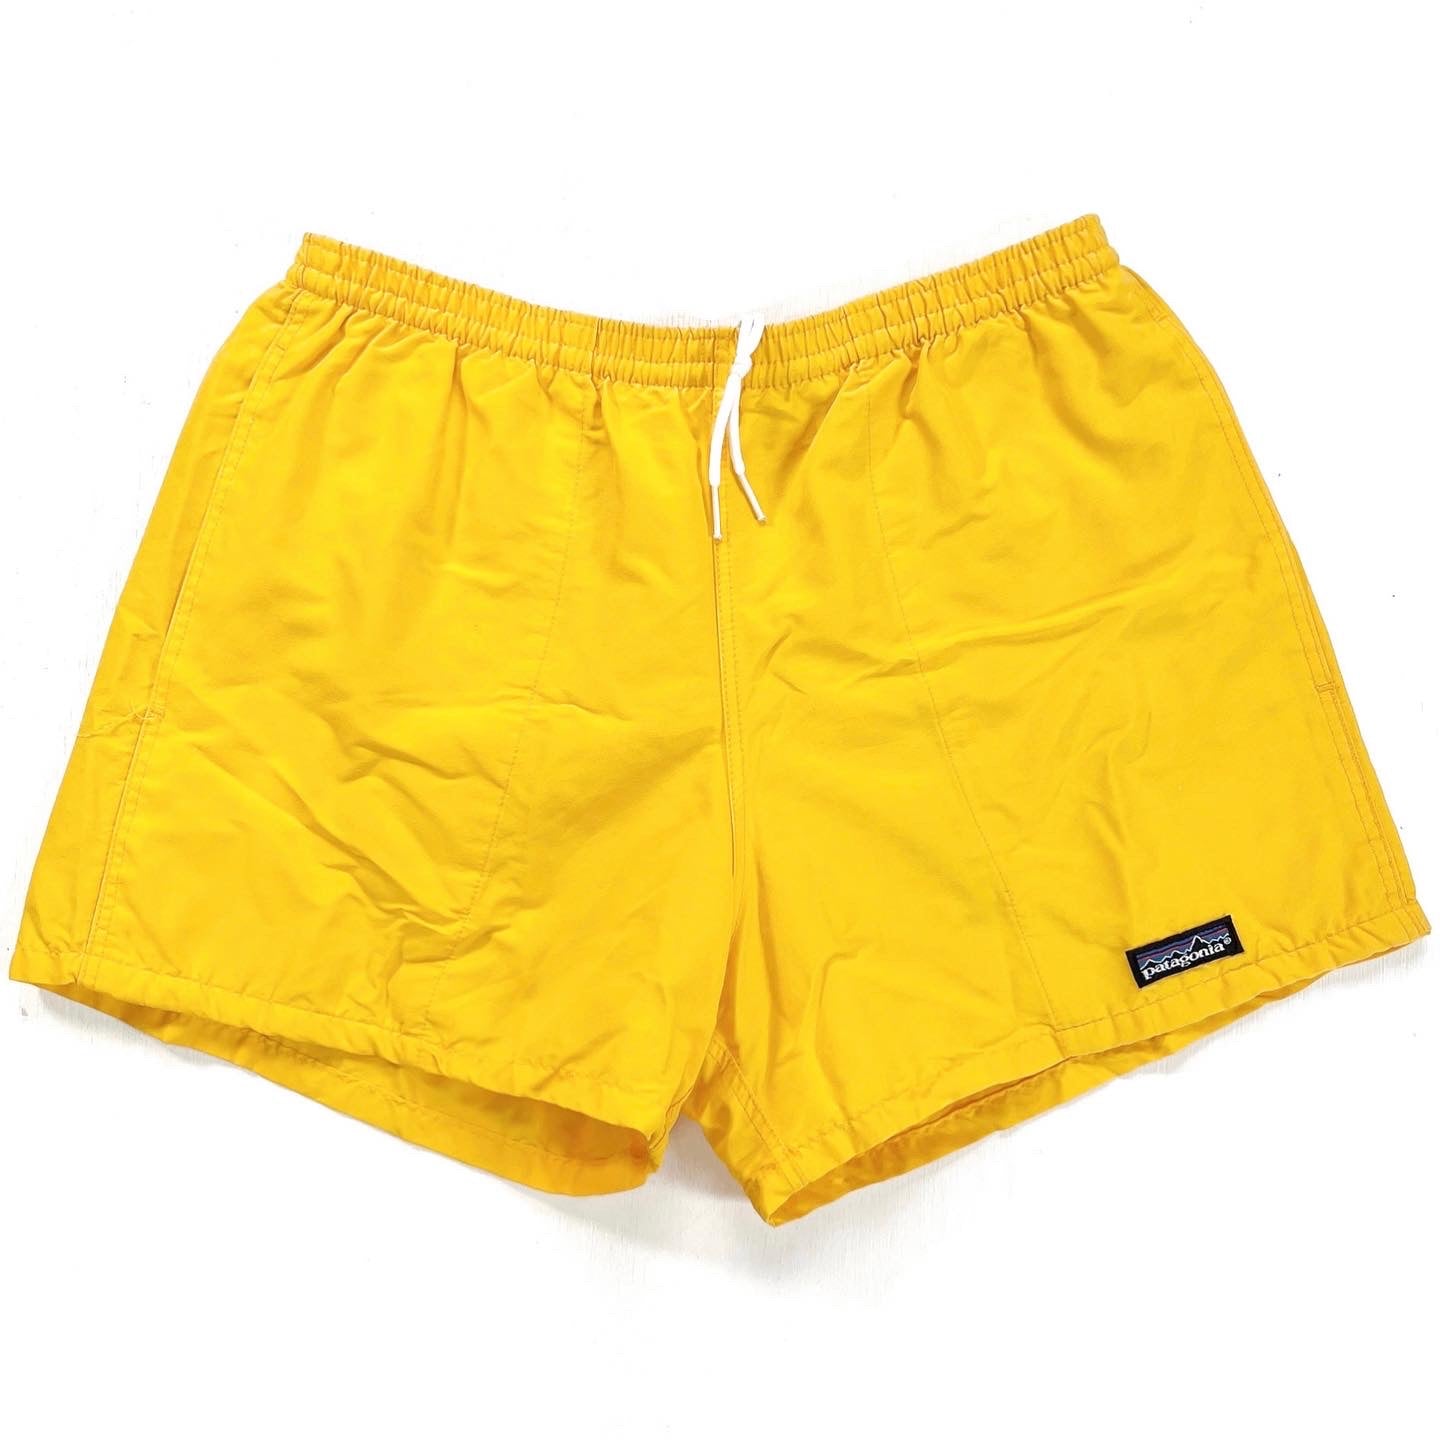 1990 Patagonia Mens 3.5” Baggies Shorts, Bright Yellow (S)